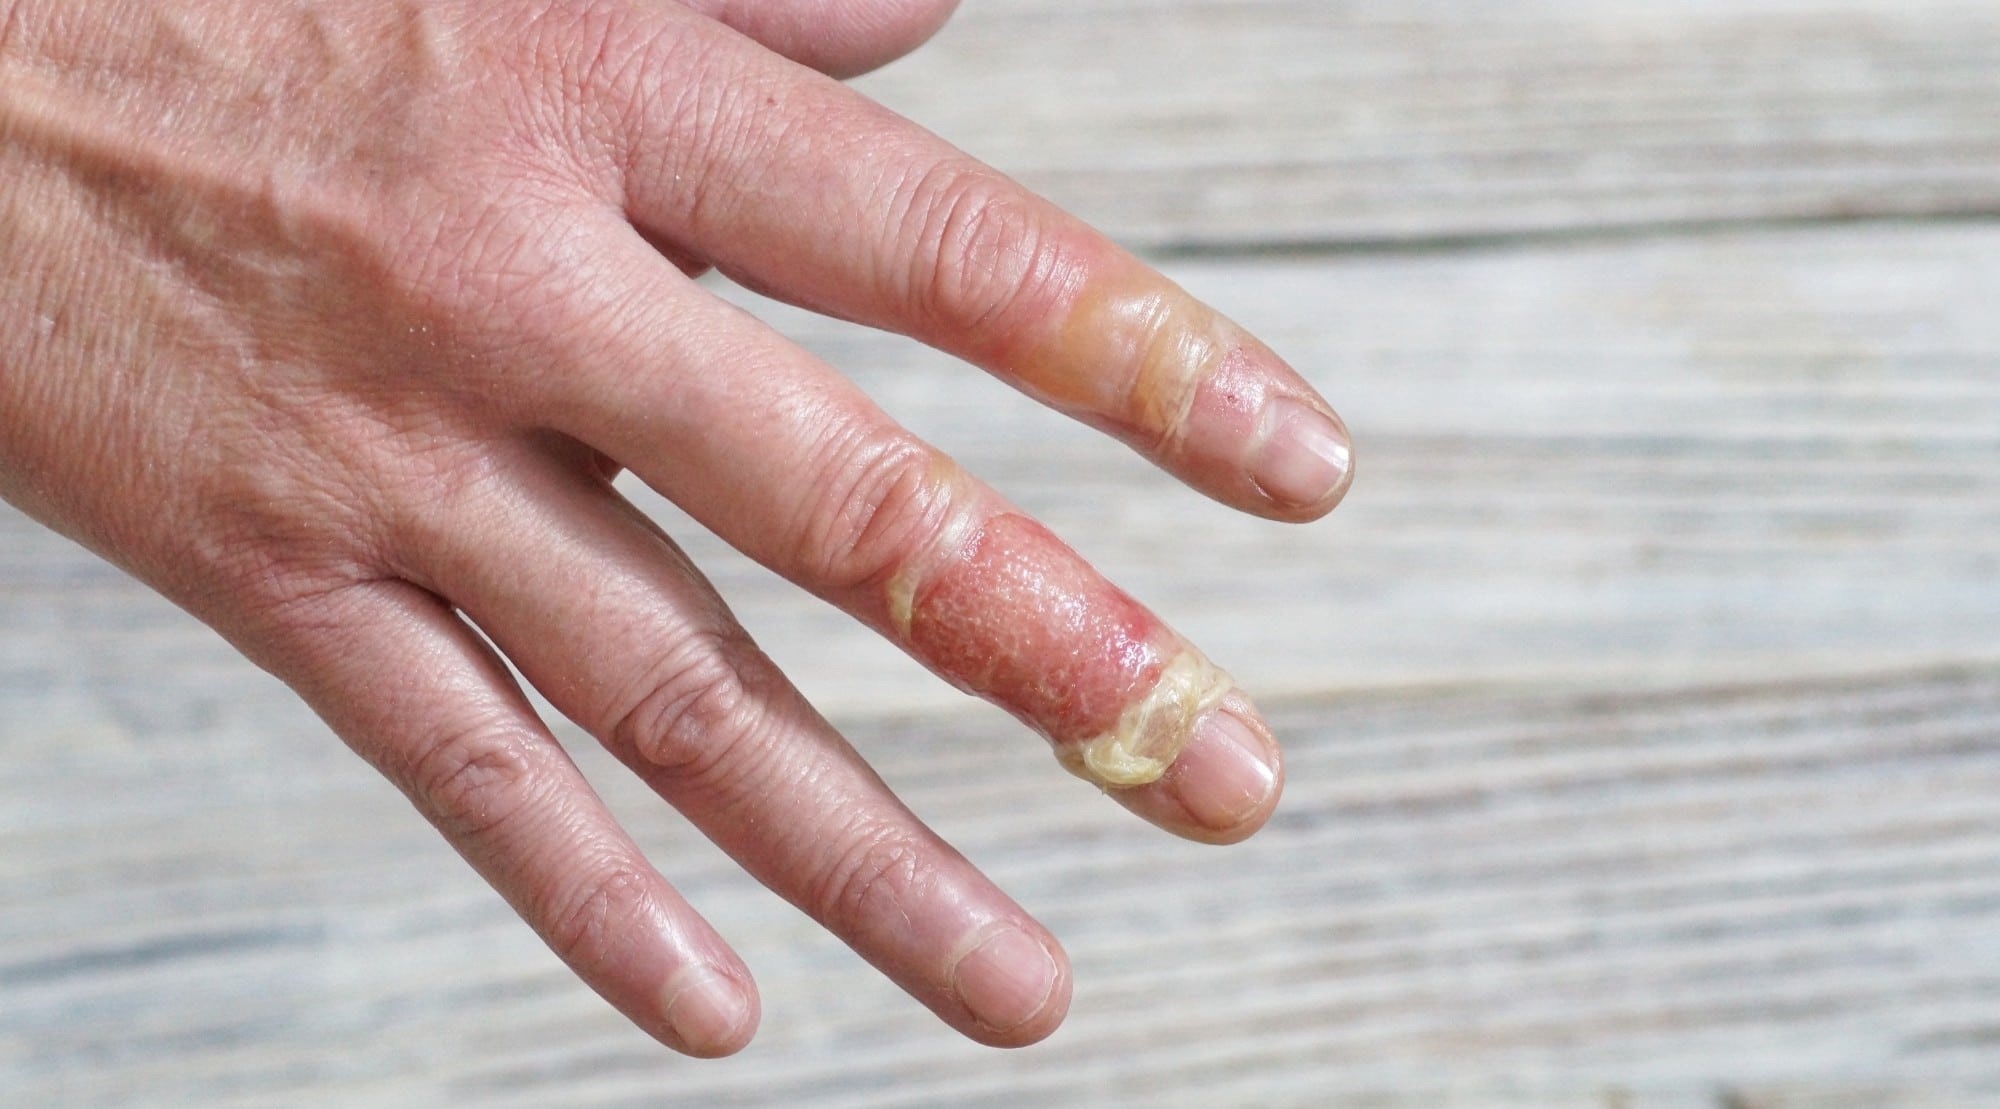 دست سوخته شده با روغن - درمان سوختگی با روغن